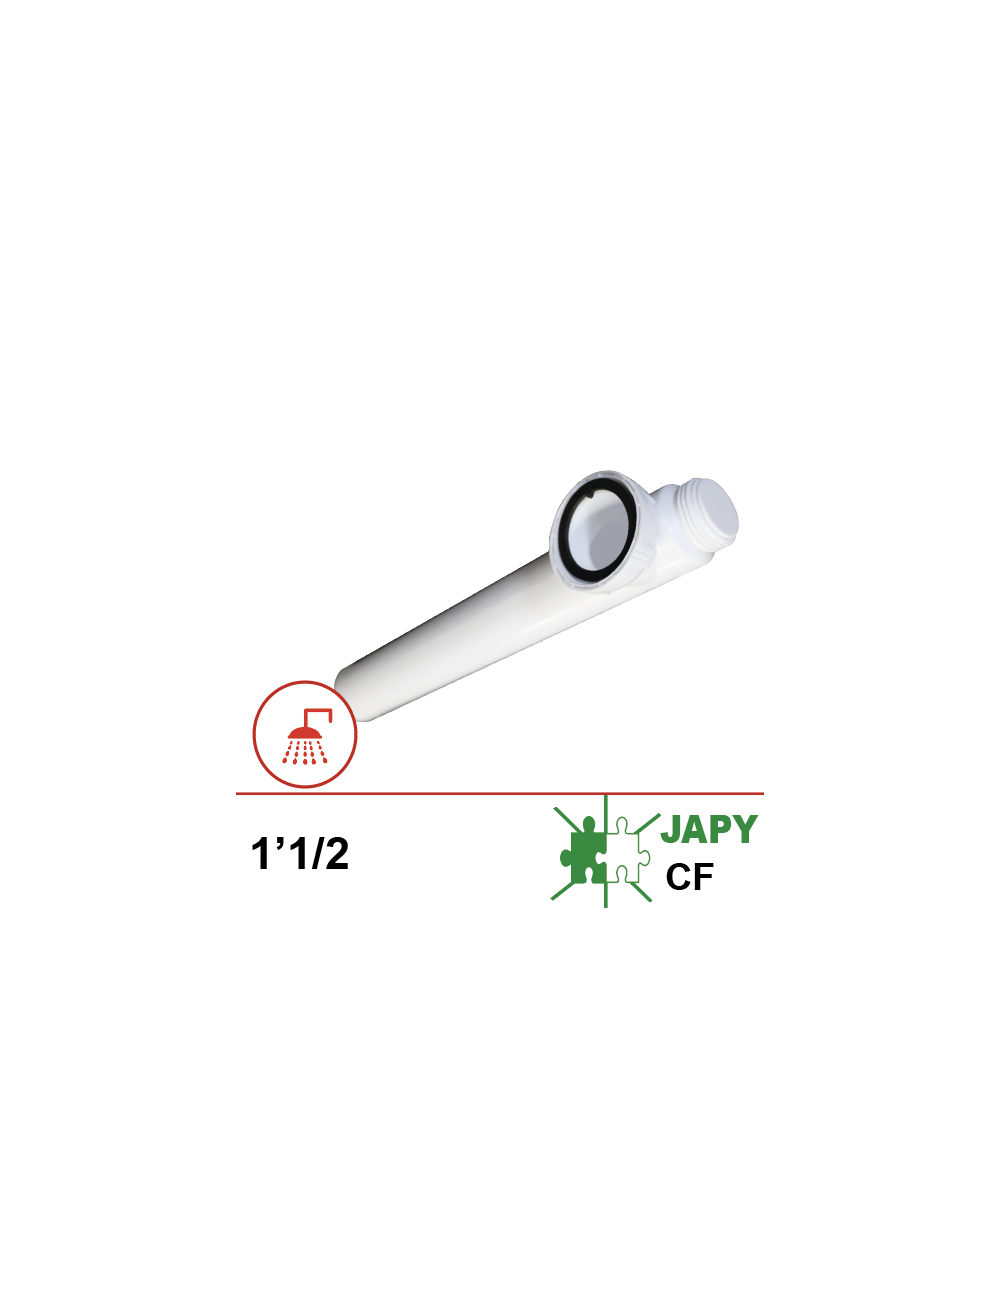 Tubulure de vidange PVC avec raccord vissé 1’1/2 et joint plat